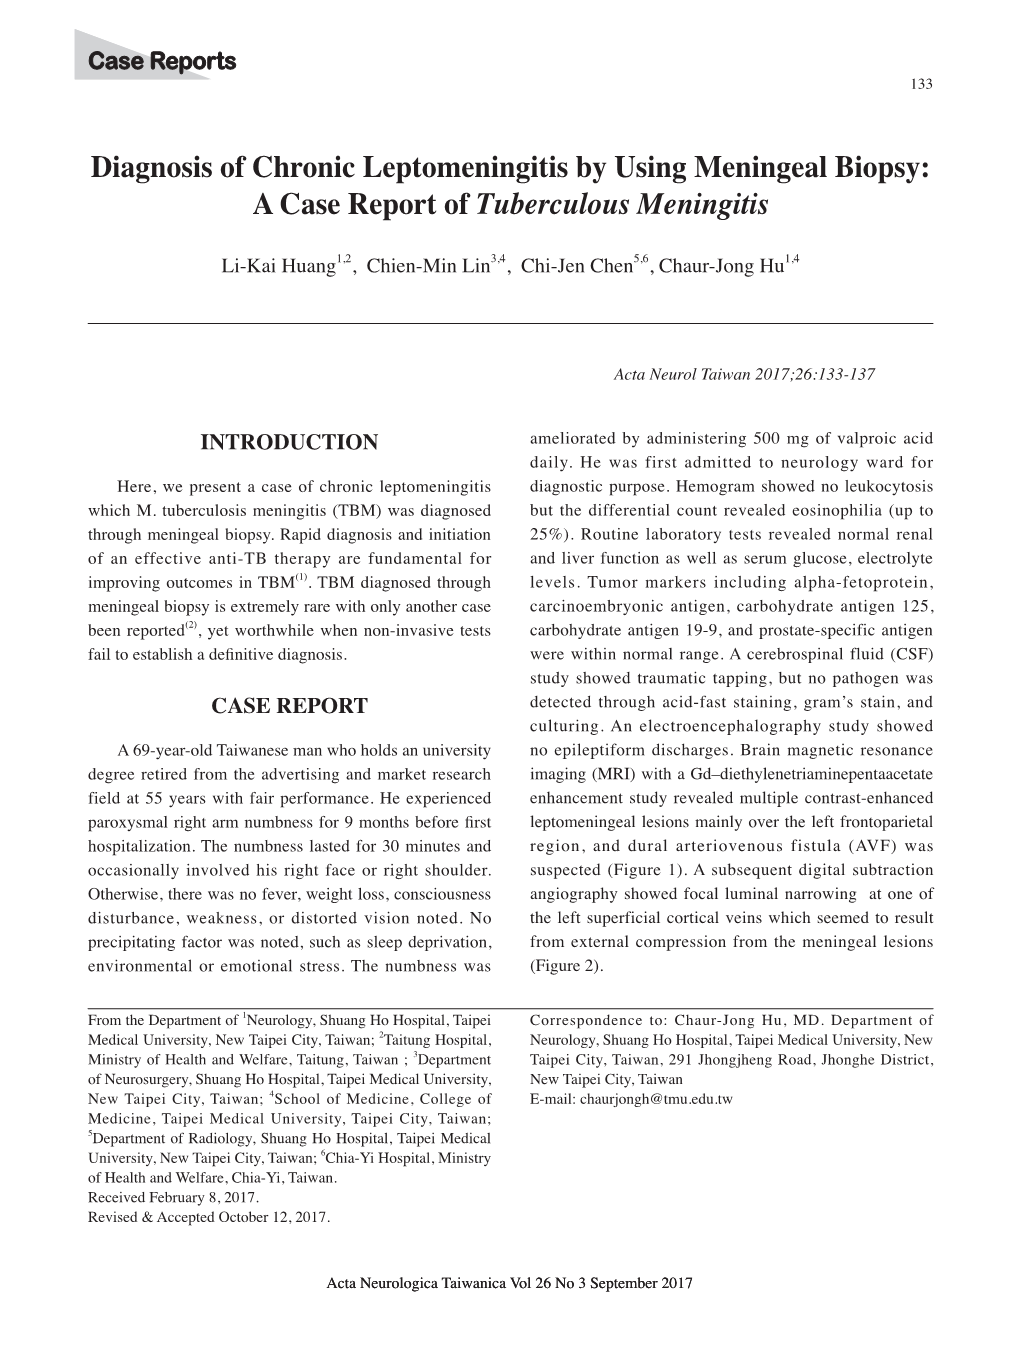 Diagnosis of Chronic Leptomeningitis by Using Meningeal Biopsy: a Case Report of Tuberculous Meningitis